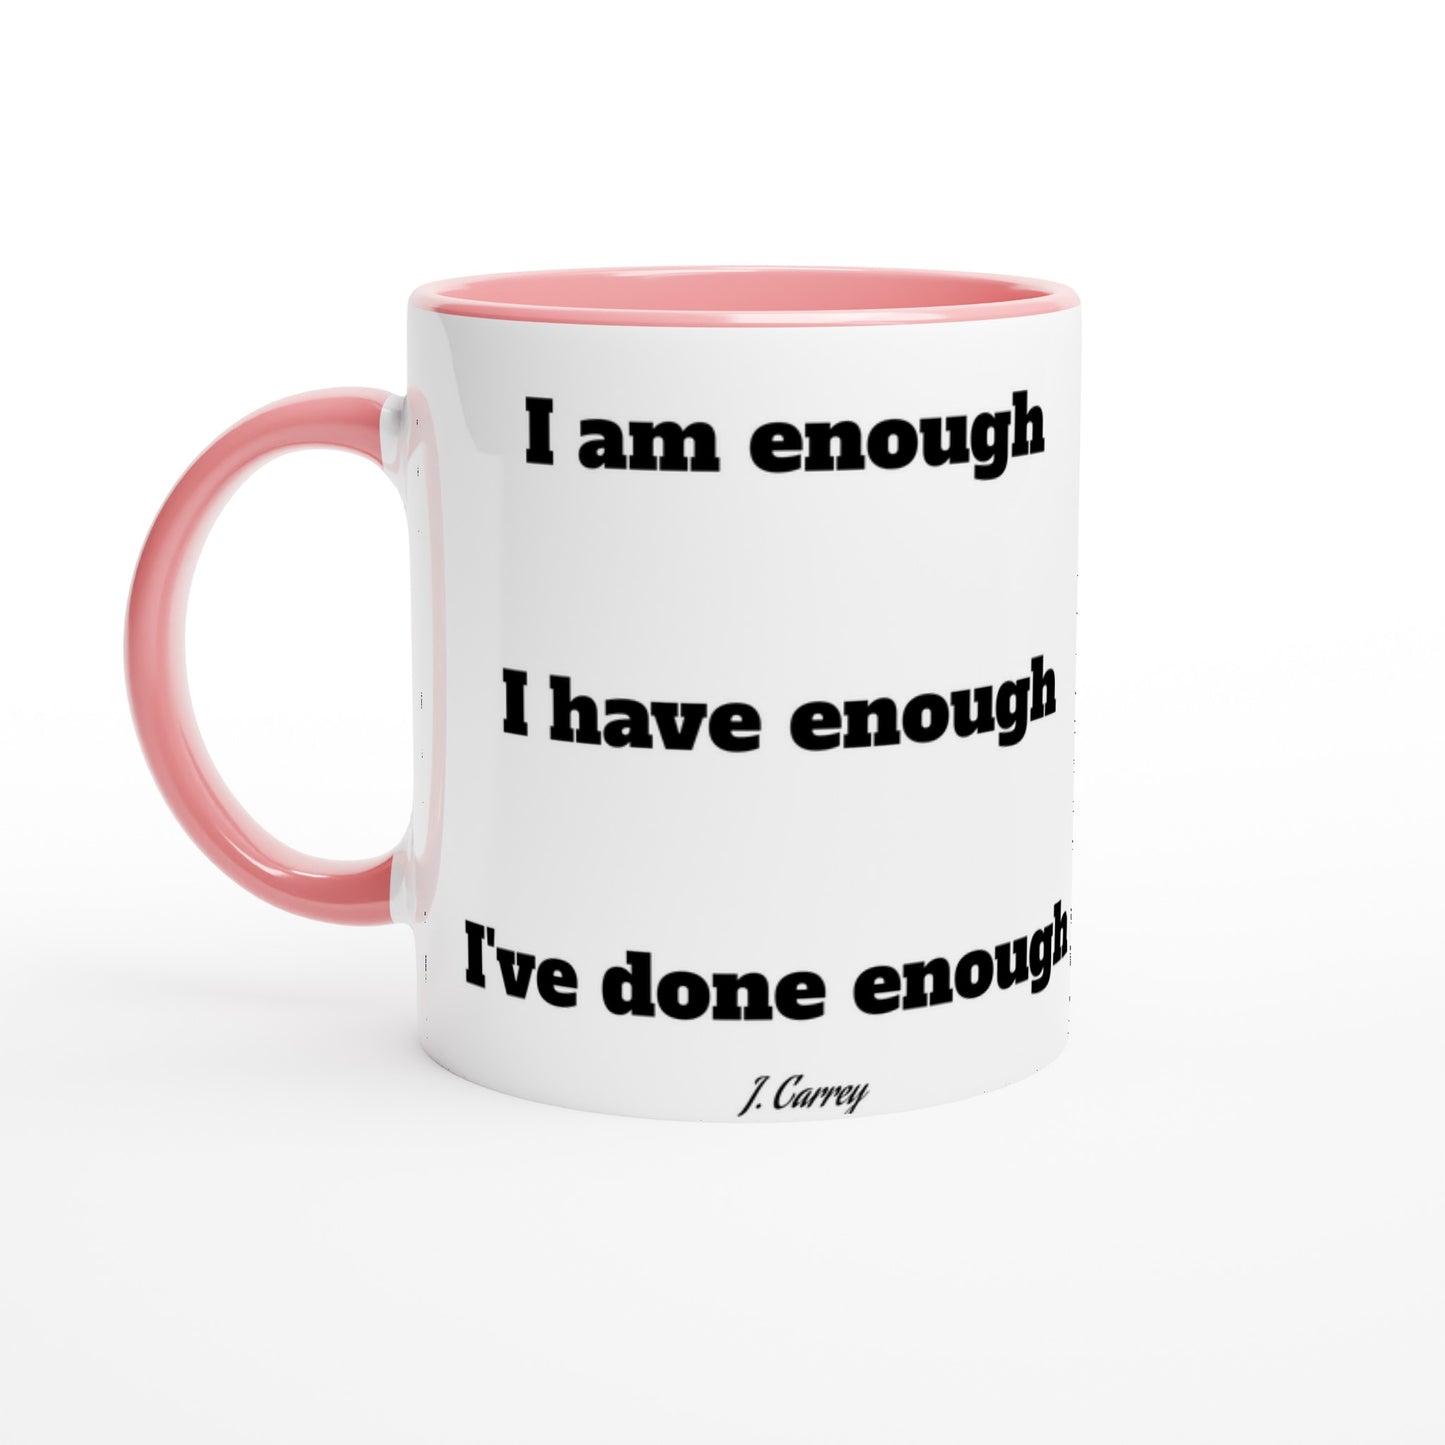 Quote Mug - Jim Carrey I am enough - White Ceramic Mug 330ml